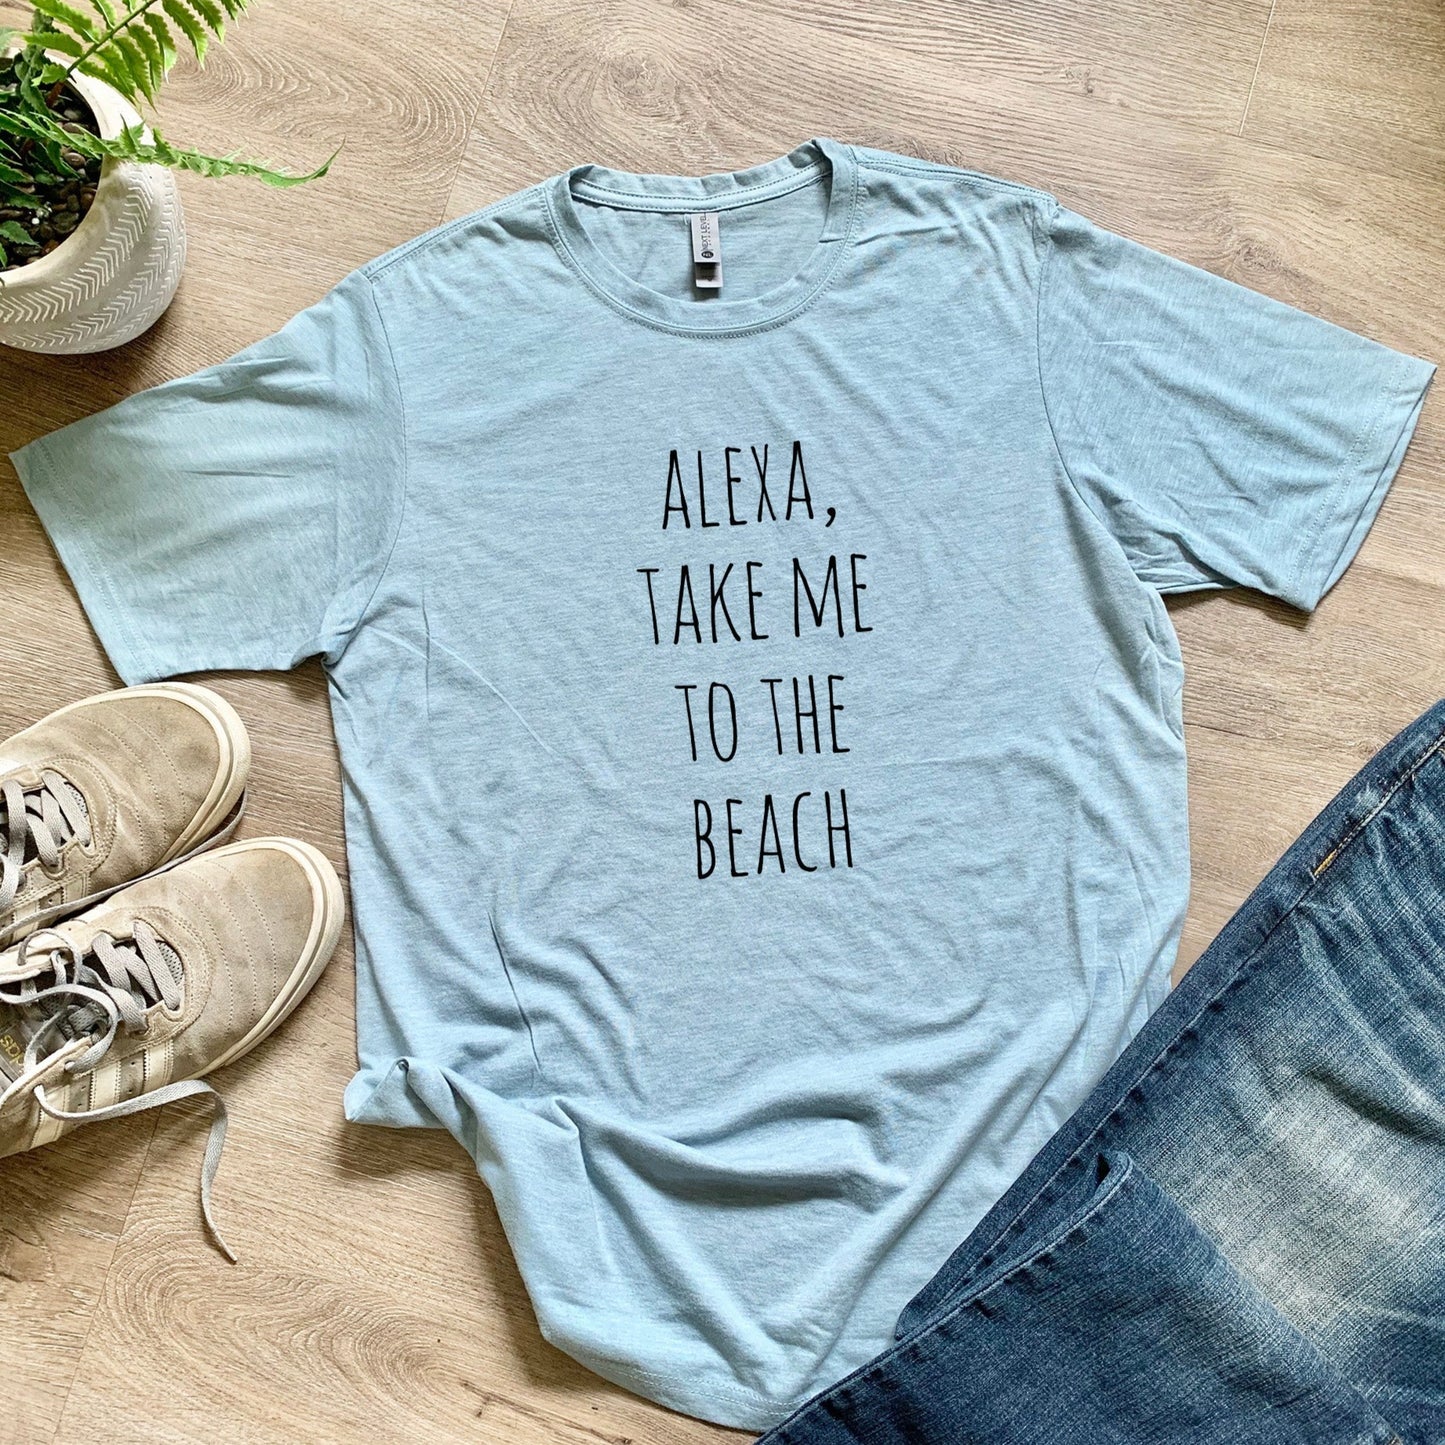 Alexa, Take Me To The Beach - Men's / Unisex Tee - Stonewash Blue or Sage